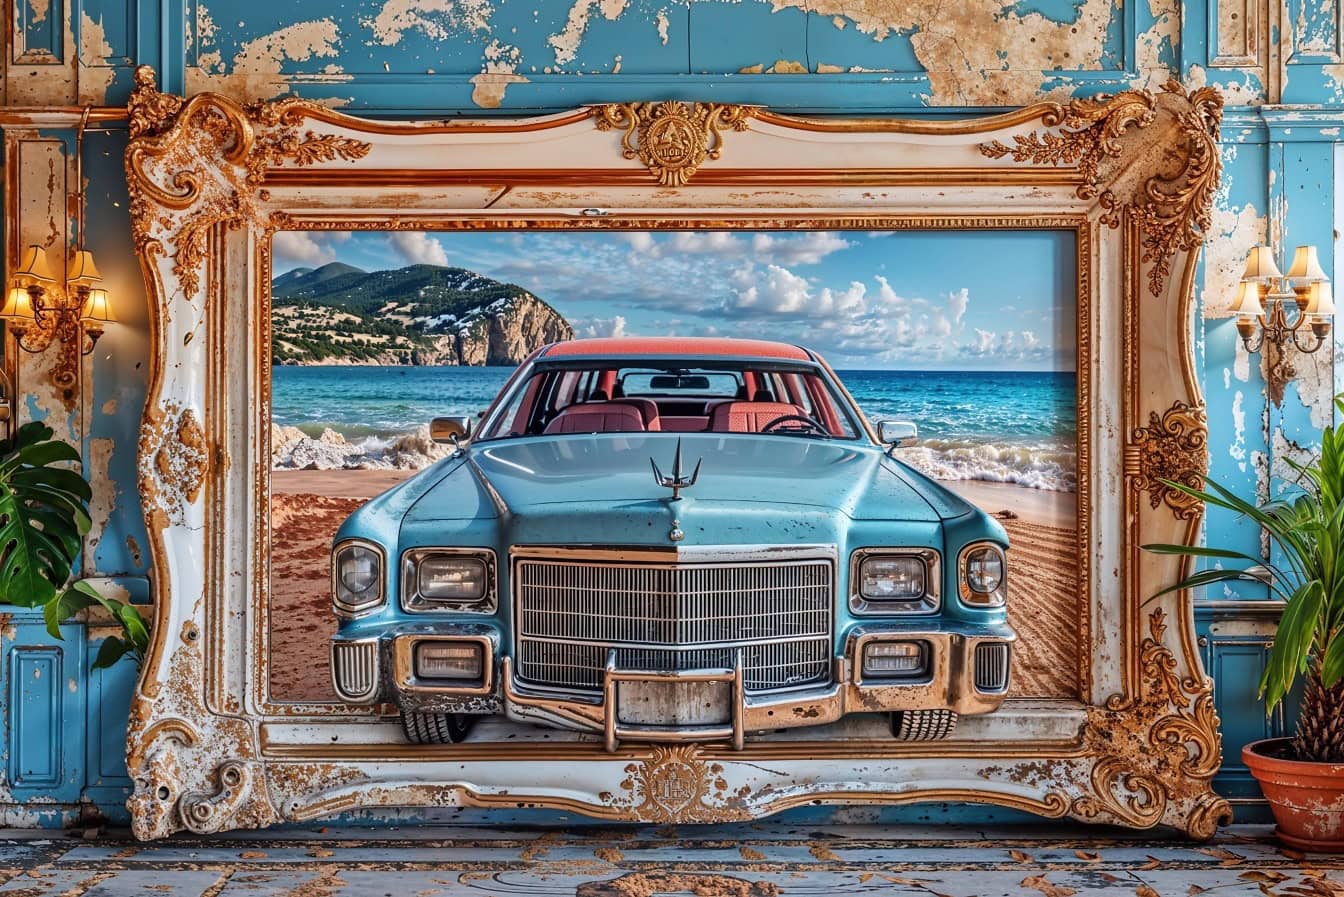 クラシックなアメリカンキャデラックカーの大きな3D写真が、古いビクトリア朝のフレームの壁に掛けられています